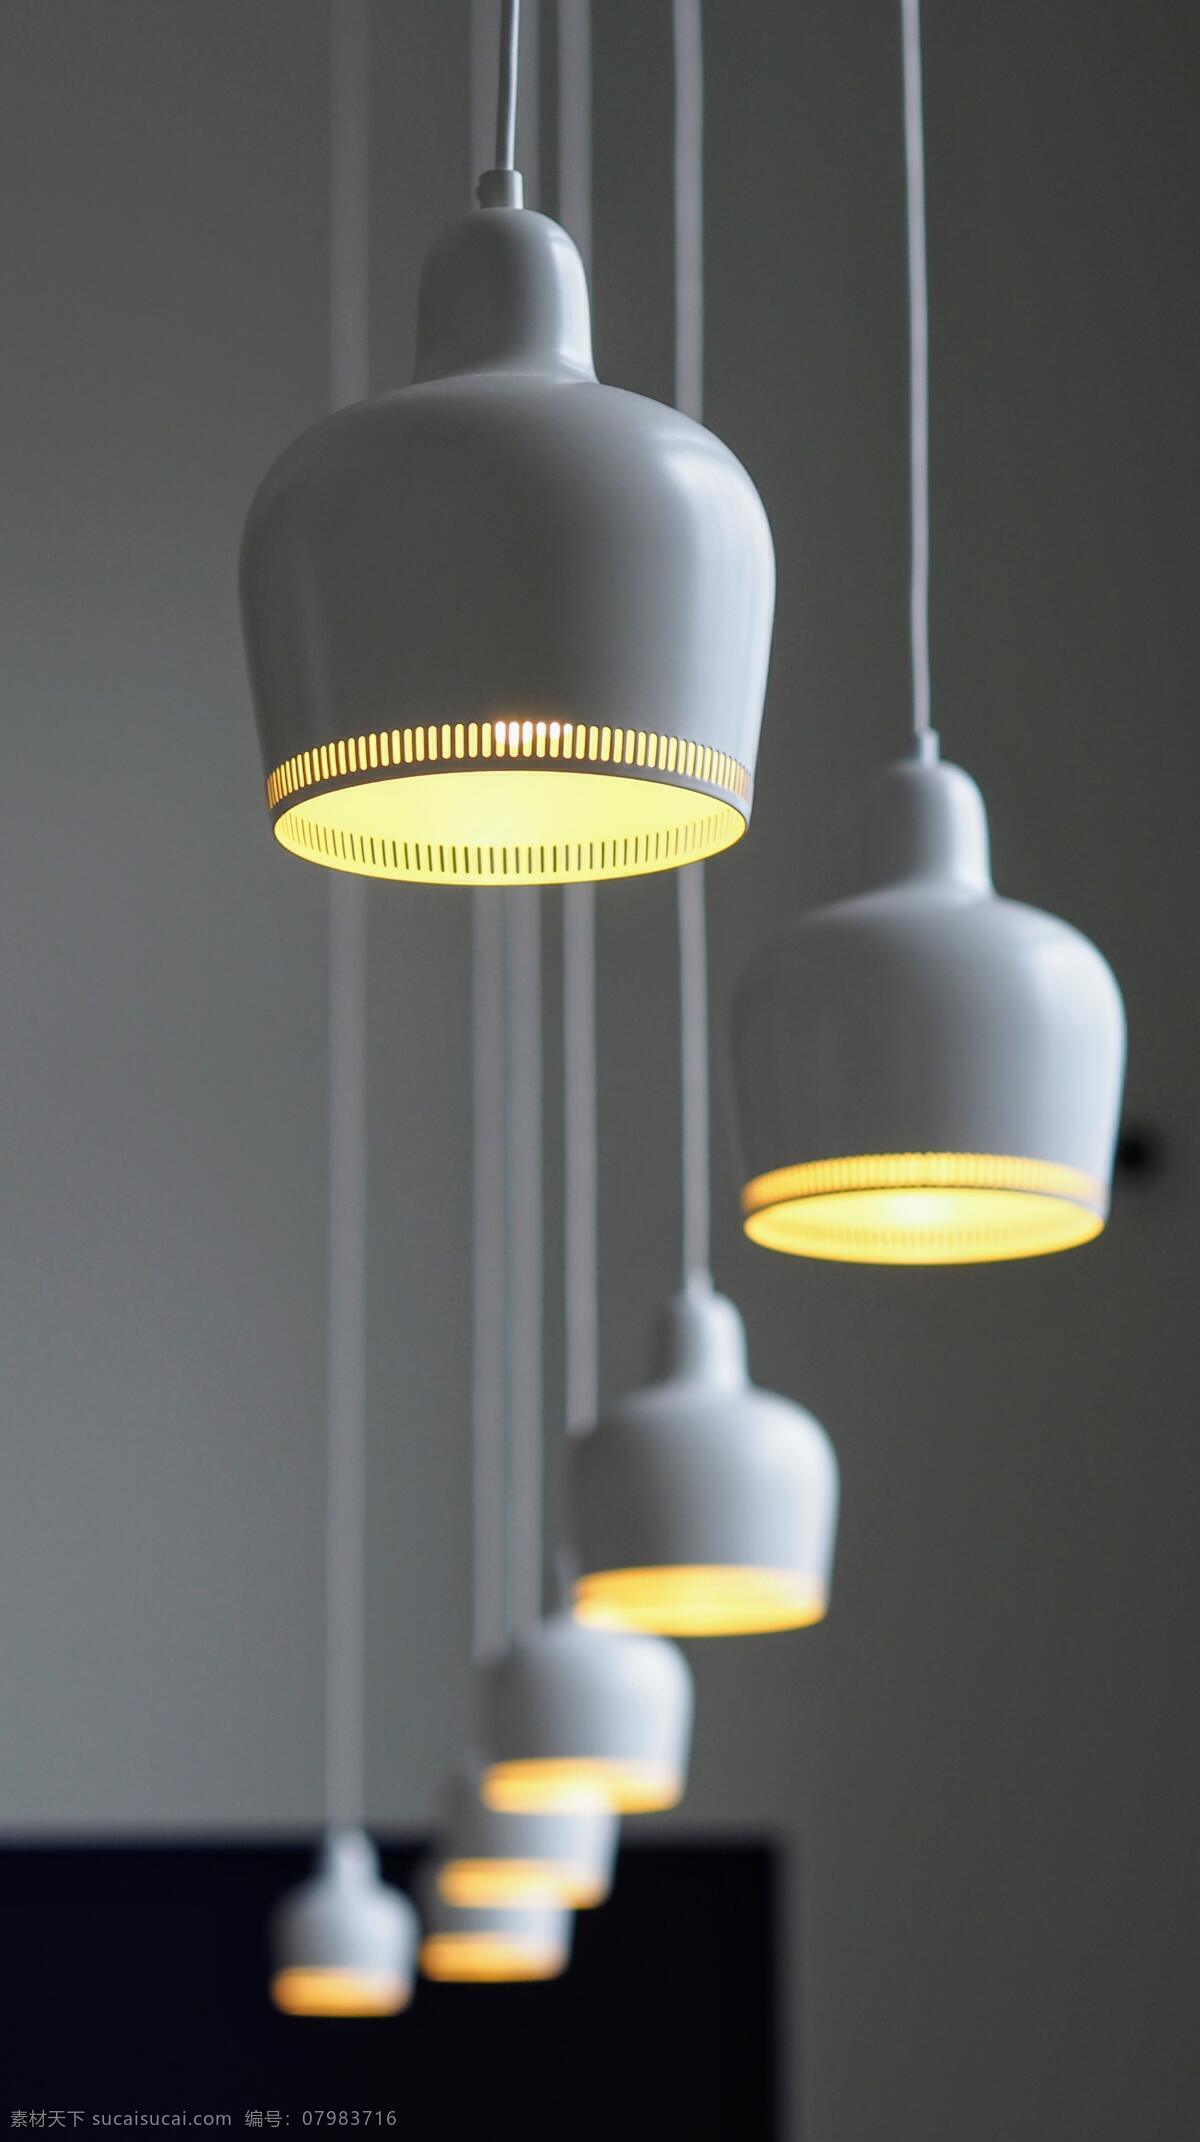 灯具 灯饰 创意 现代 创意感 设计感 现代感 冷灰色 柠檬色 柠檬 撞色 简约 风格 室内 装修 生活百科 生活素材